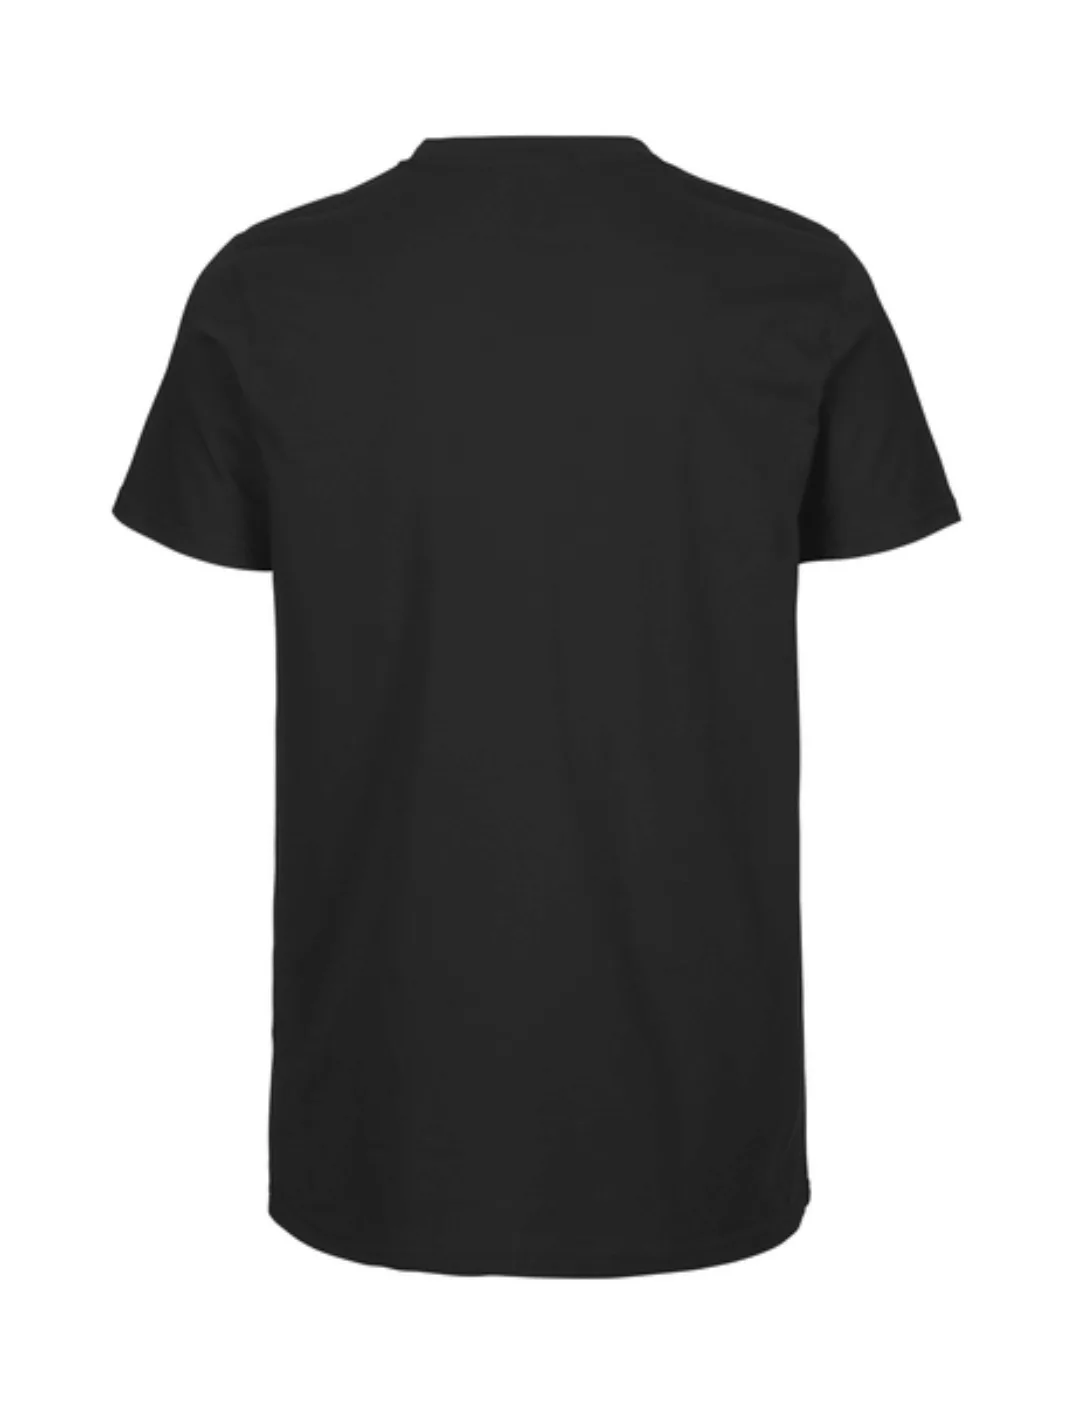 Männer T-shirt günstig online kaufen